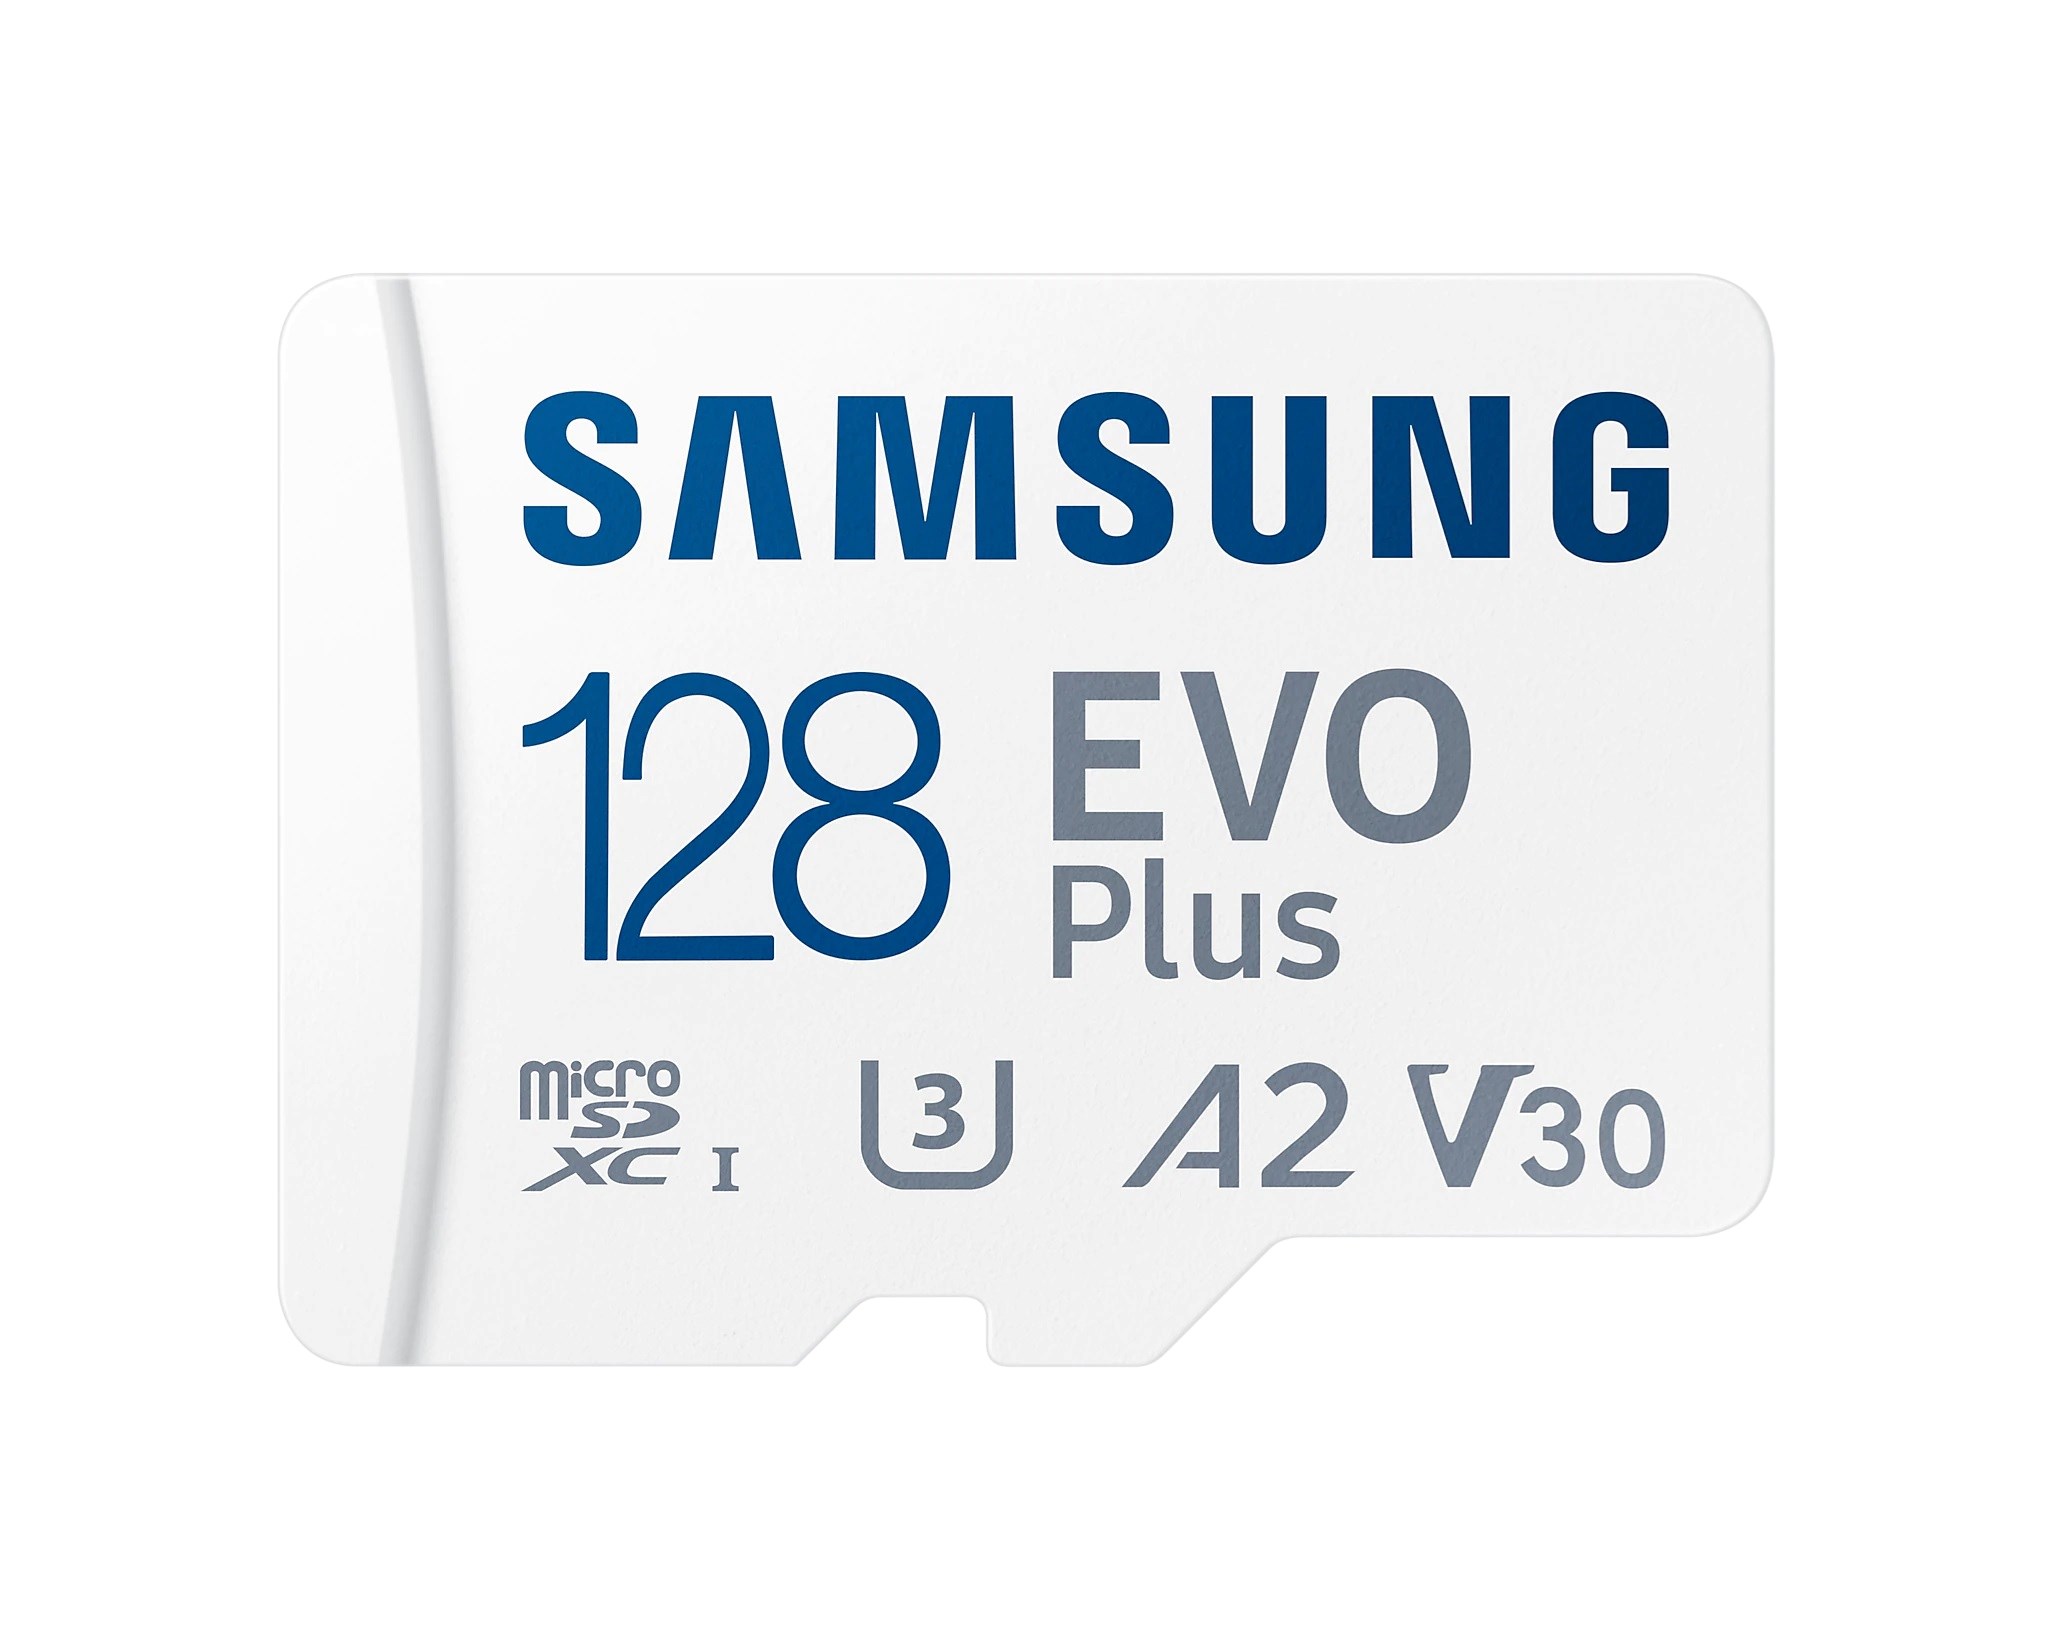 Samsung Evo Plus MB-MC128KA/TR  128 GB Hafıza Kartı